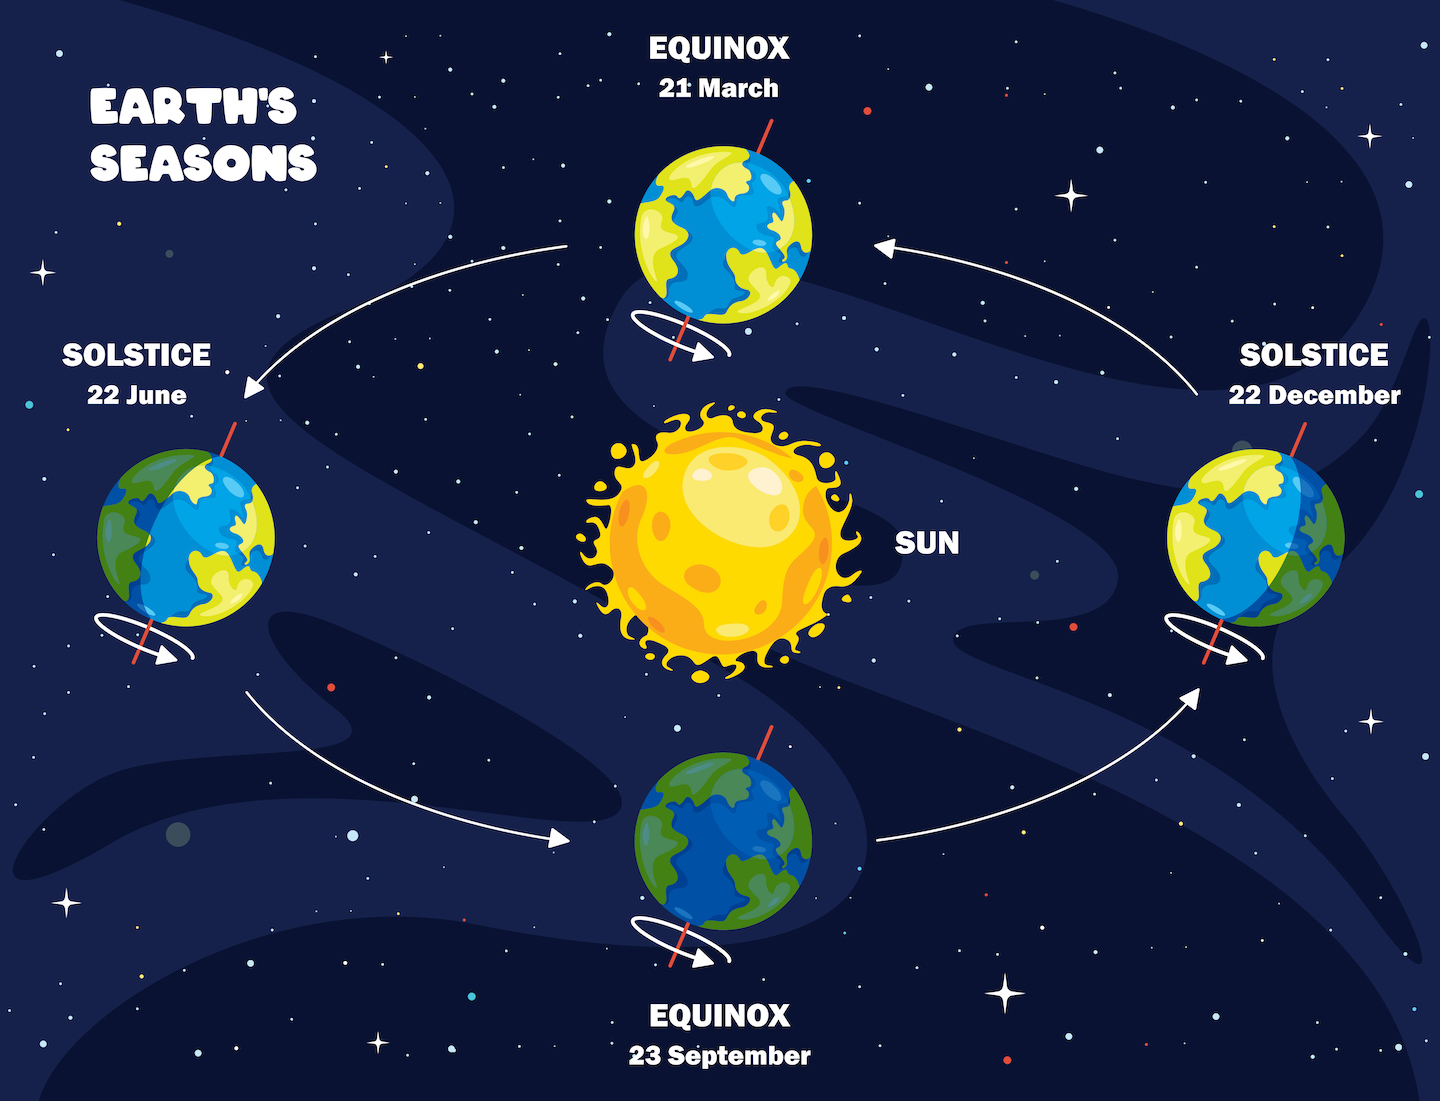 una ilustración muestra la tierra en cuatro puntos diferentes en su órbita alrededor del sol, con la inclinación de la tierra constante, de modo que en dos puntos el polo norte de la tierra está inclinado hacia el sol o alejándolo, y en dos puntos el polo norte no está inclinado ni hacia el sol ni hacia afuera del sol